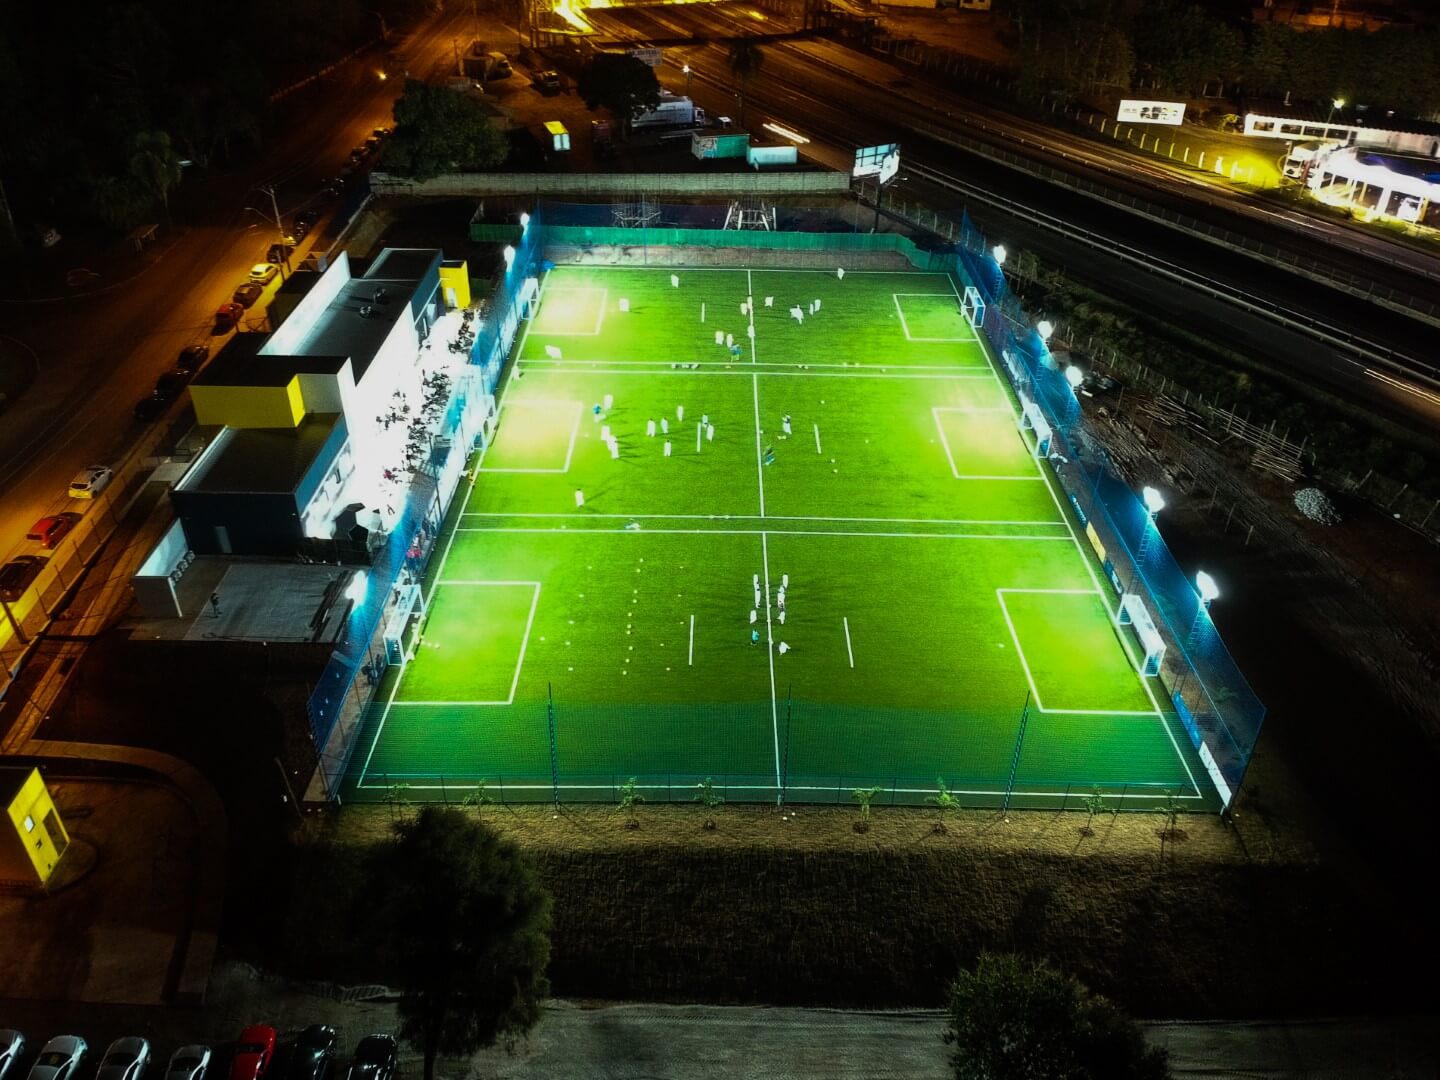 Escola de Futebol SÃO PAULO FUTEBOL CLUBE_UNIDADE SOROCABA